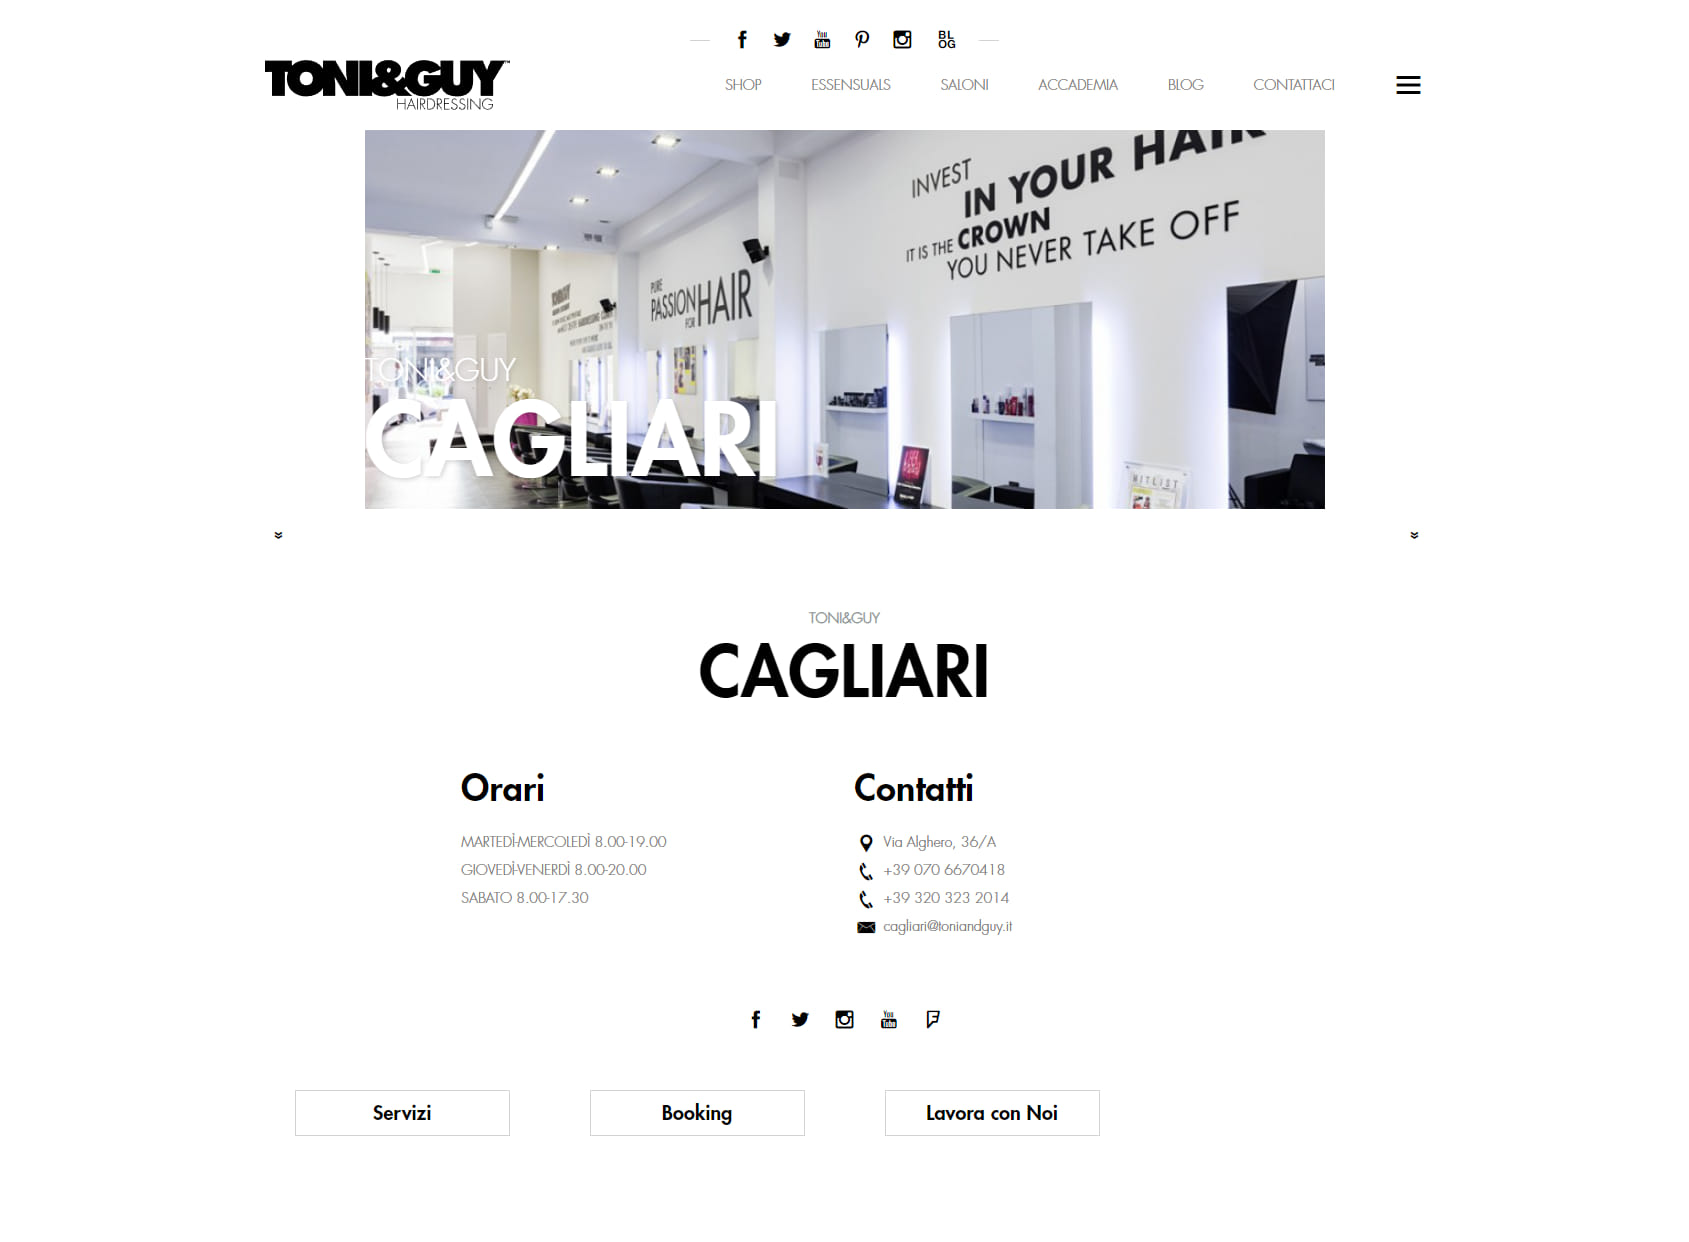 TONI&GUY Cagliari